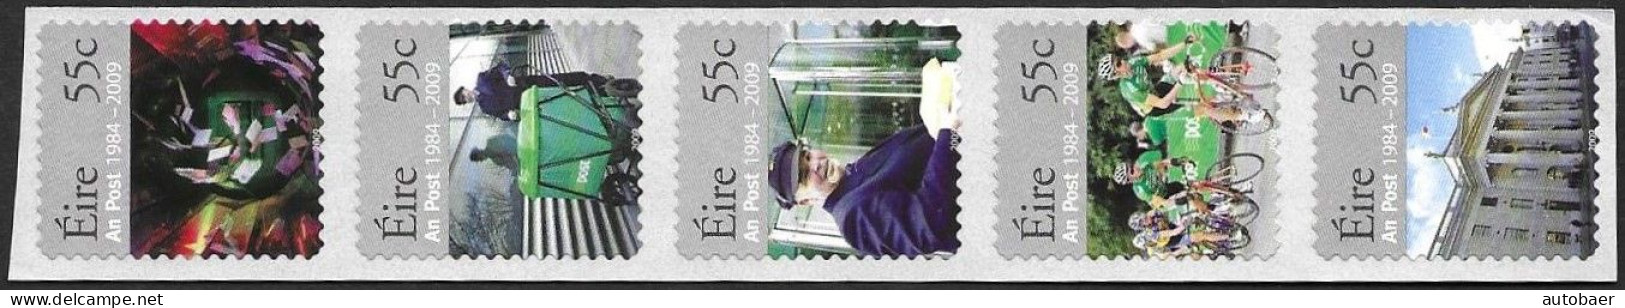 Irland Eire Ireland 2009 25 Years AN-Post Michel No 1881-85 Streifen Stripe MNH Postfrisch Neuf ** - Unused Stamps